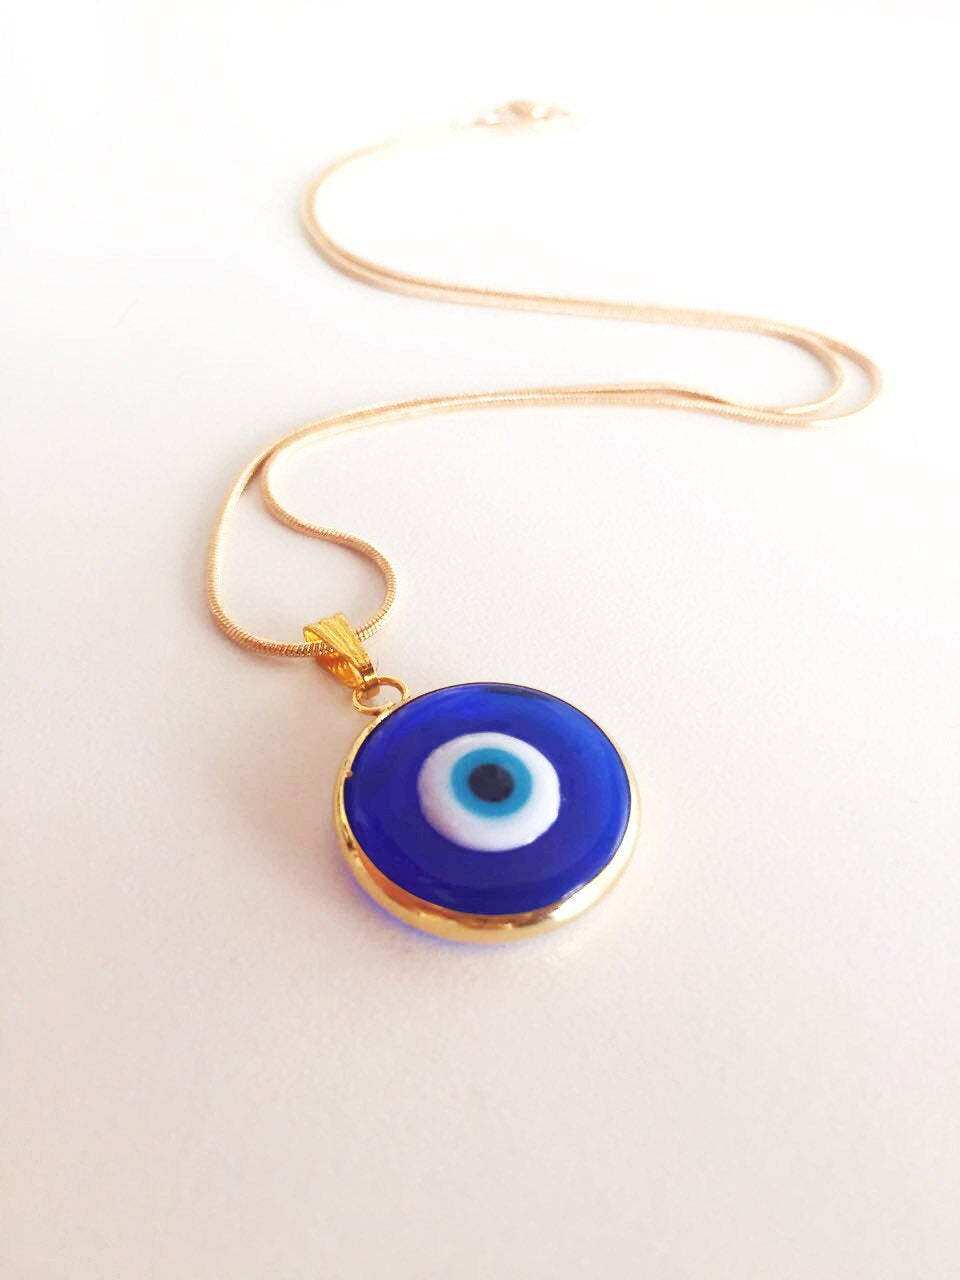 Dark blue evil eye necklace, choker necklace, tiny evil eye necklace, 22K gold plated necklace - Evileyefavor